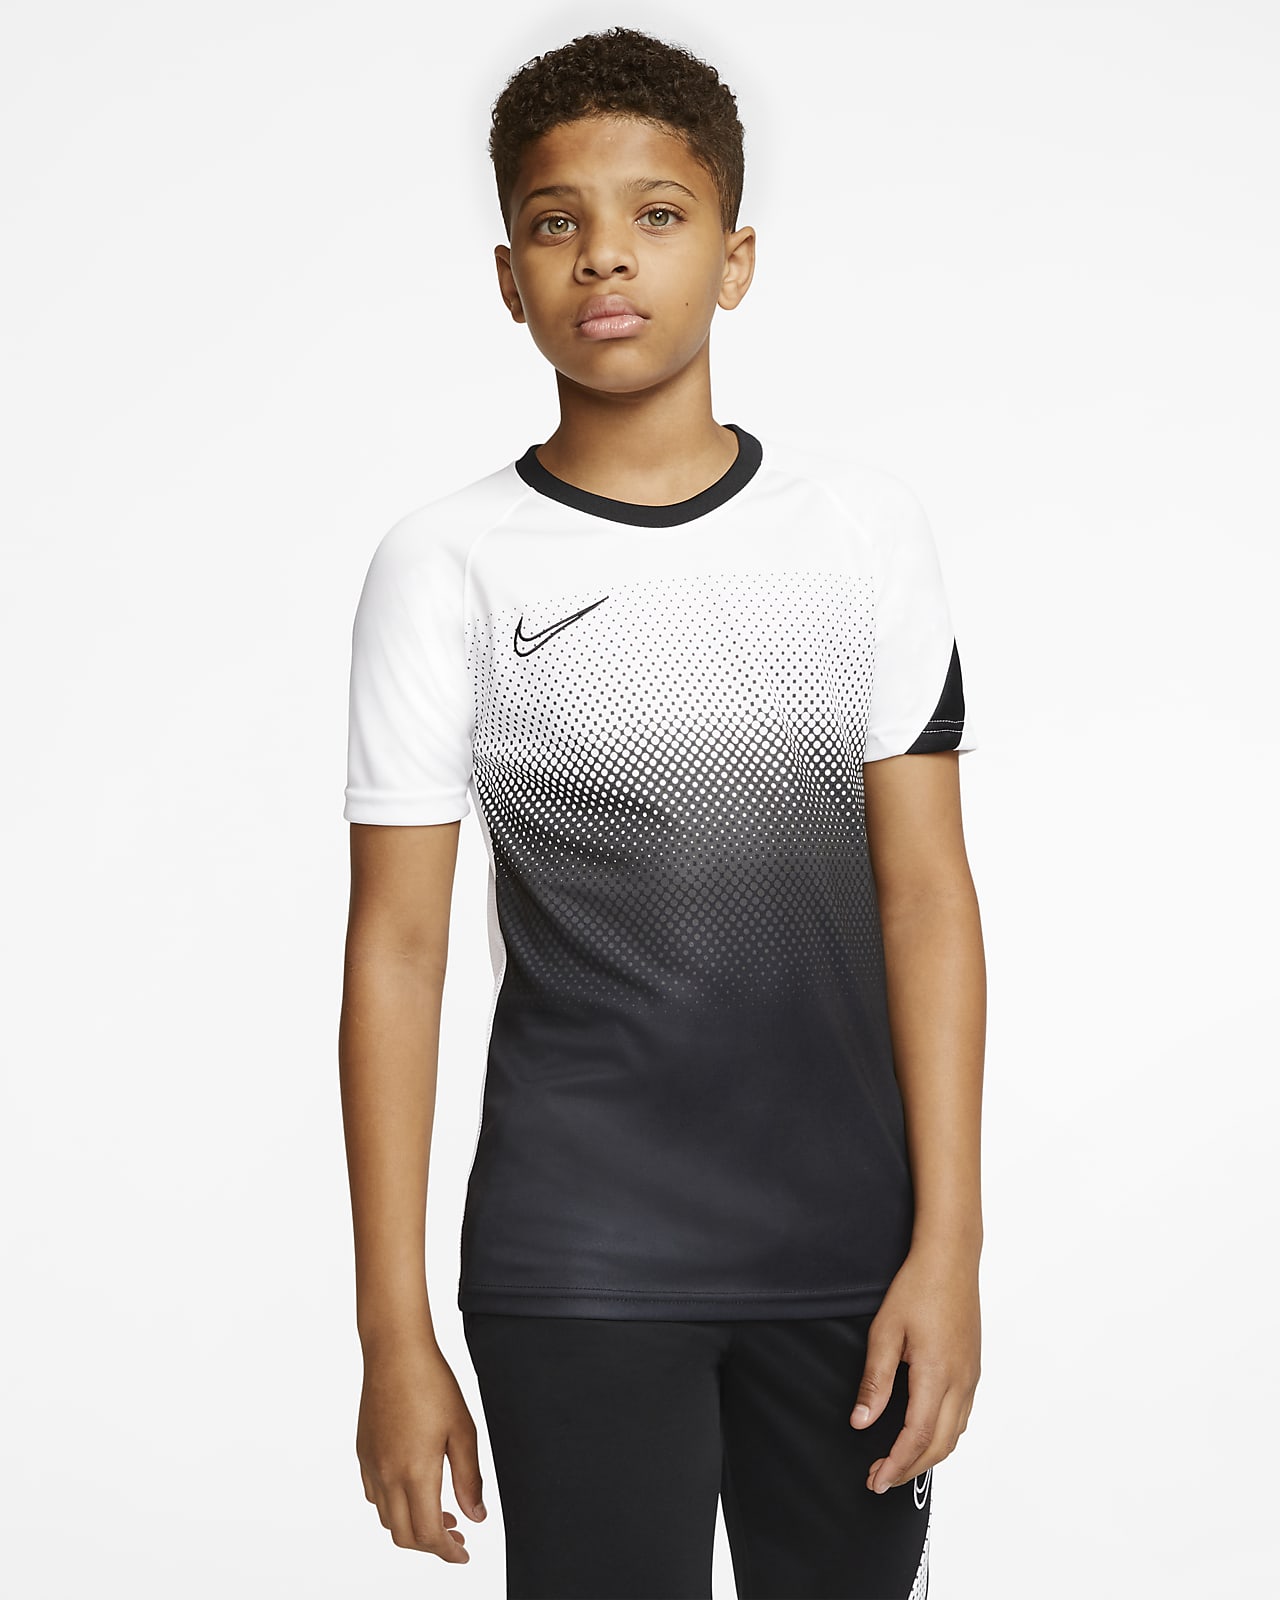 Nike公式 ナイキ Dri Fit アカデミー ジュニア ショートスリーブ サッカートップ オンラインストア 通販サイト